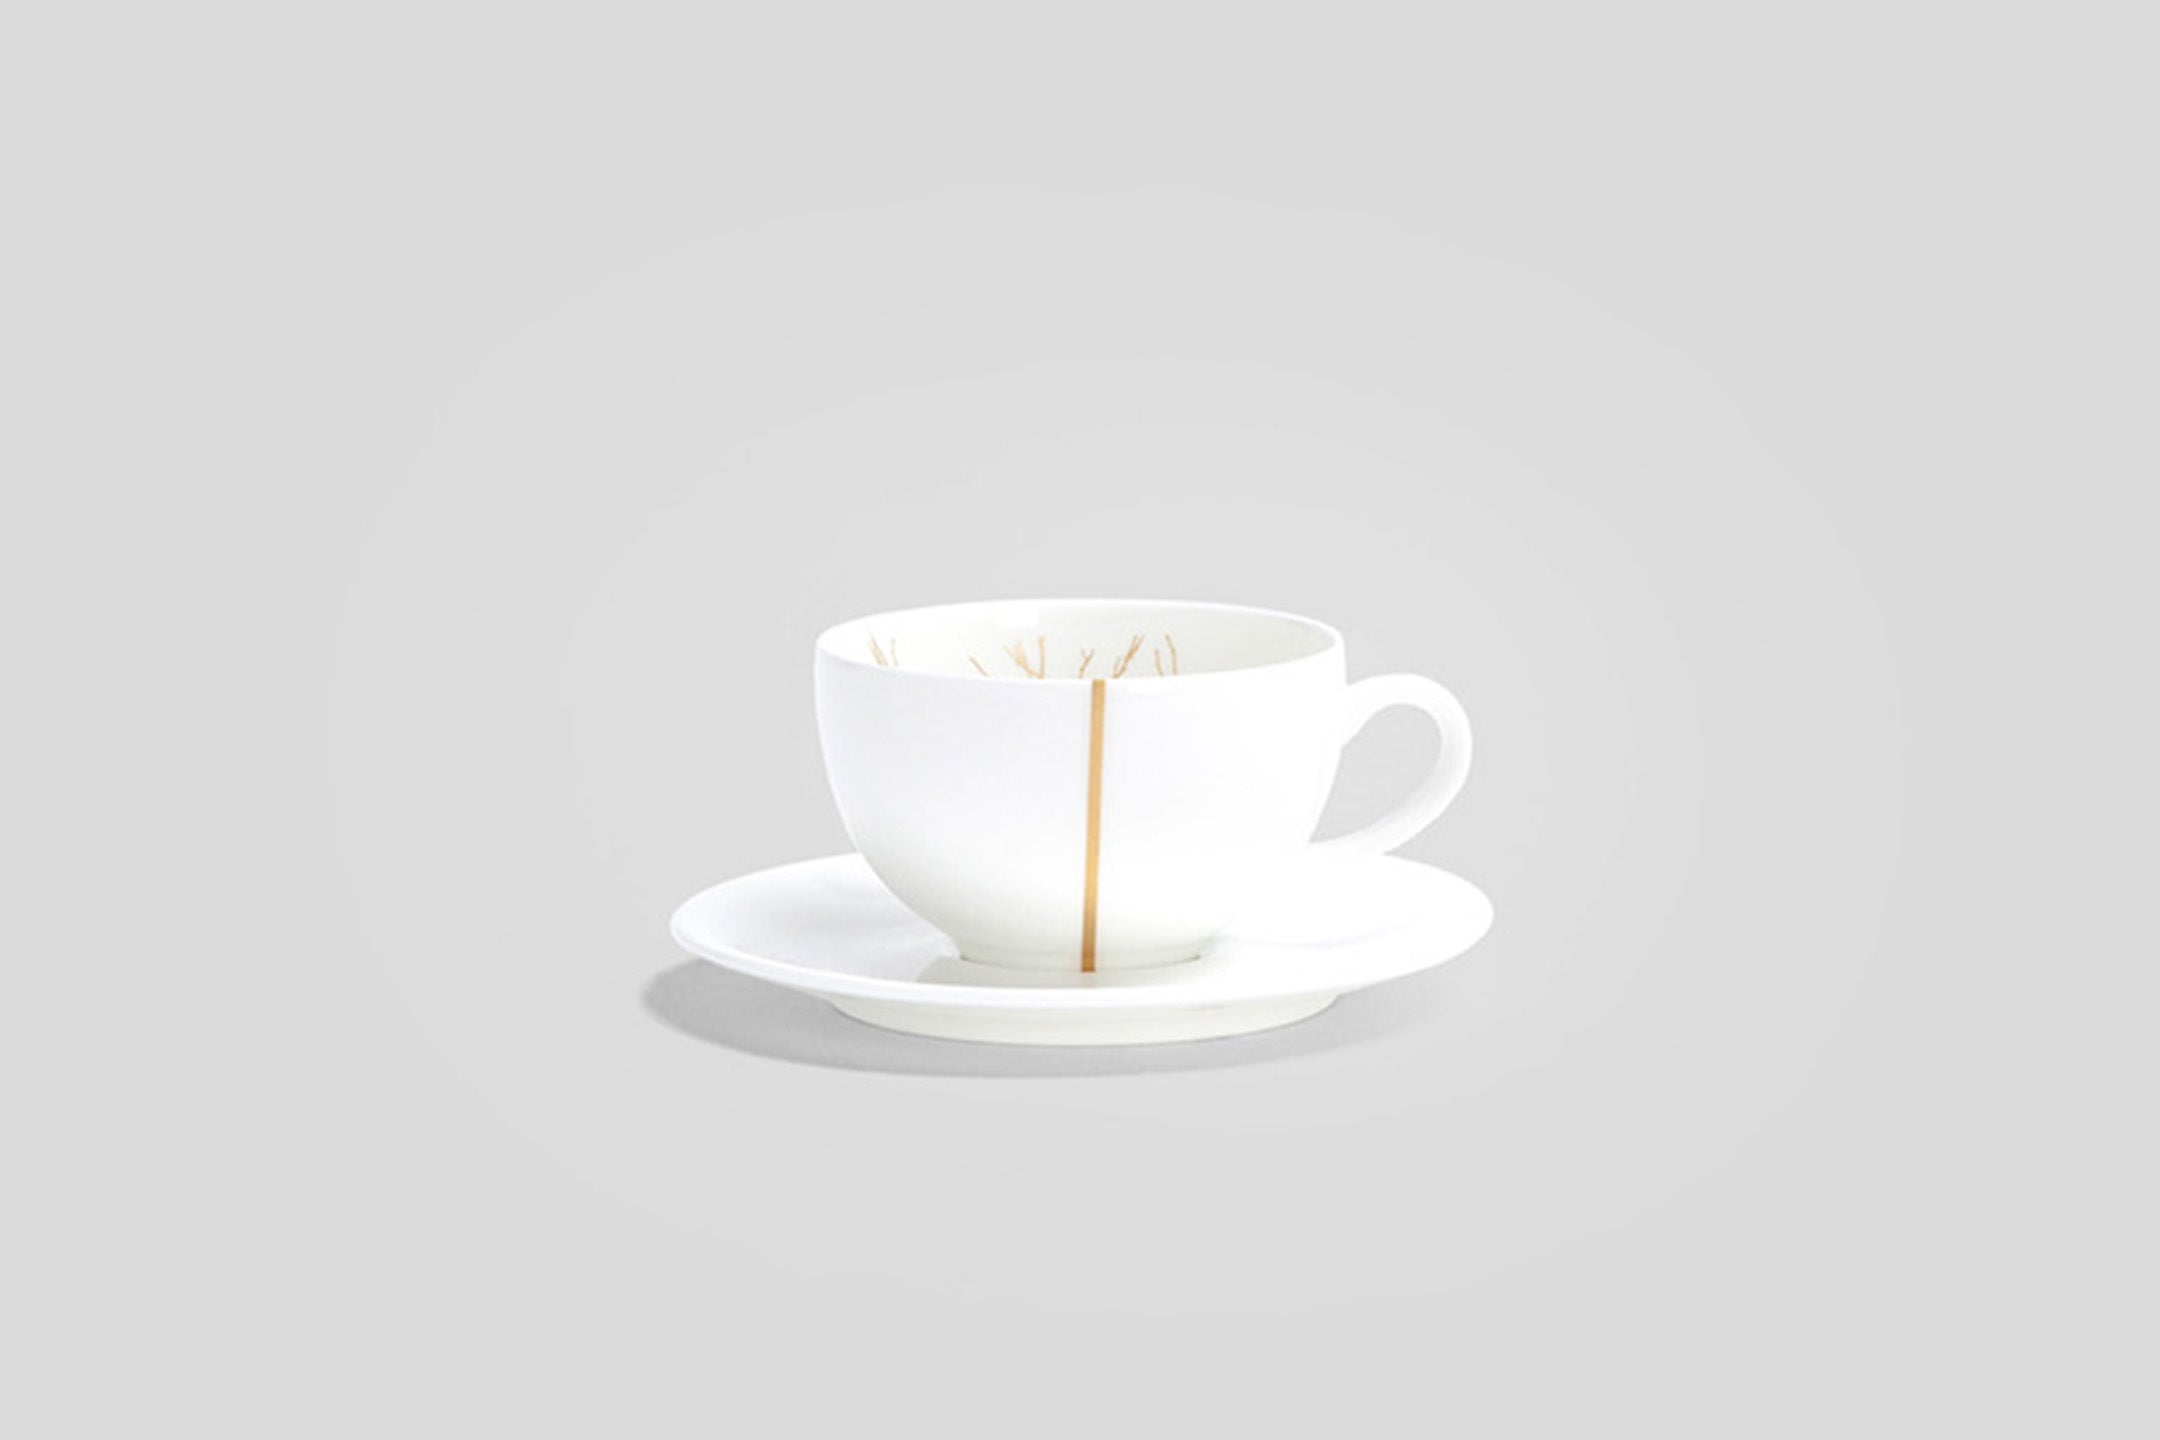 Designer-Luxury-Modern-Dibbern Golden Forest Espresso Cup & Saucer-Dibbern-Golden Forest-Gold-Bodo Sperlein-Bone China-Designer-Luxury-Modern-Tasse-Becher-Kaffee Tasse